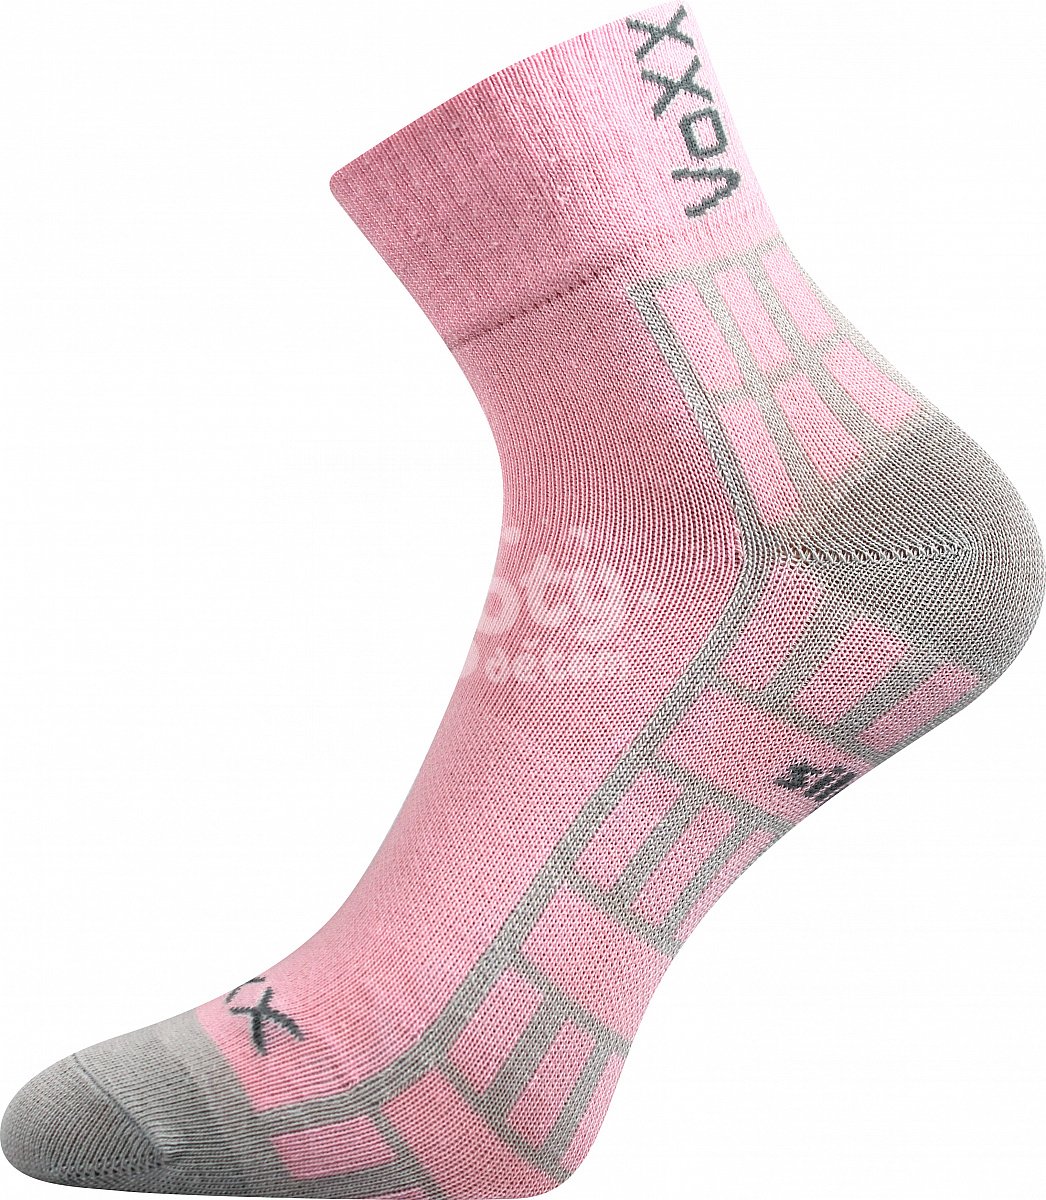 Ponožky VoXX Maik silproX mix 1 pár sv. růžová